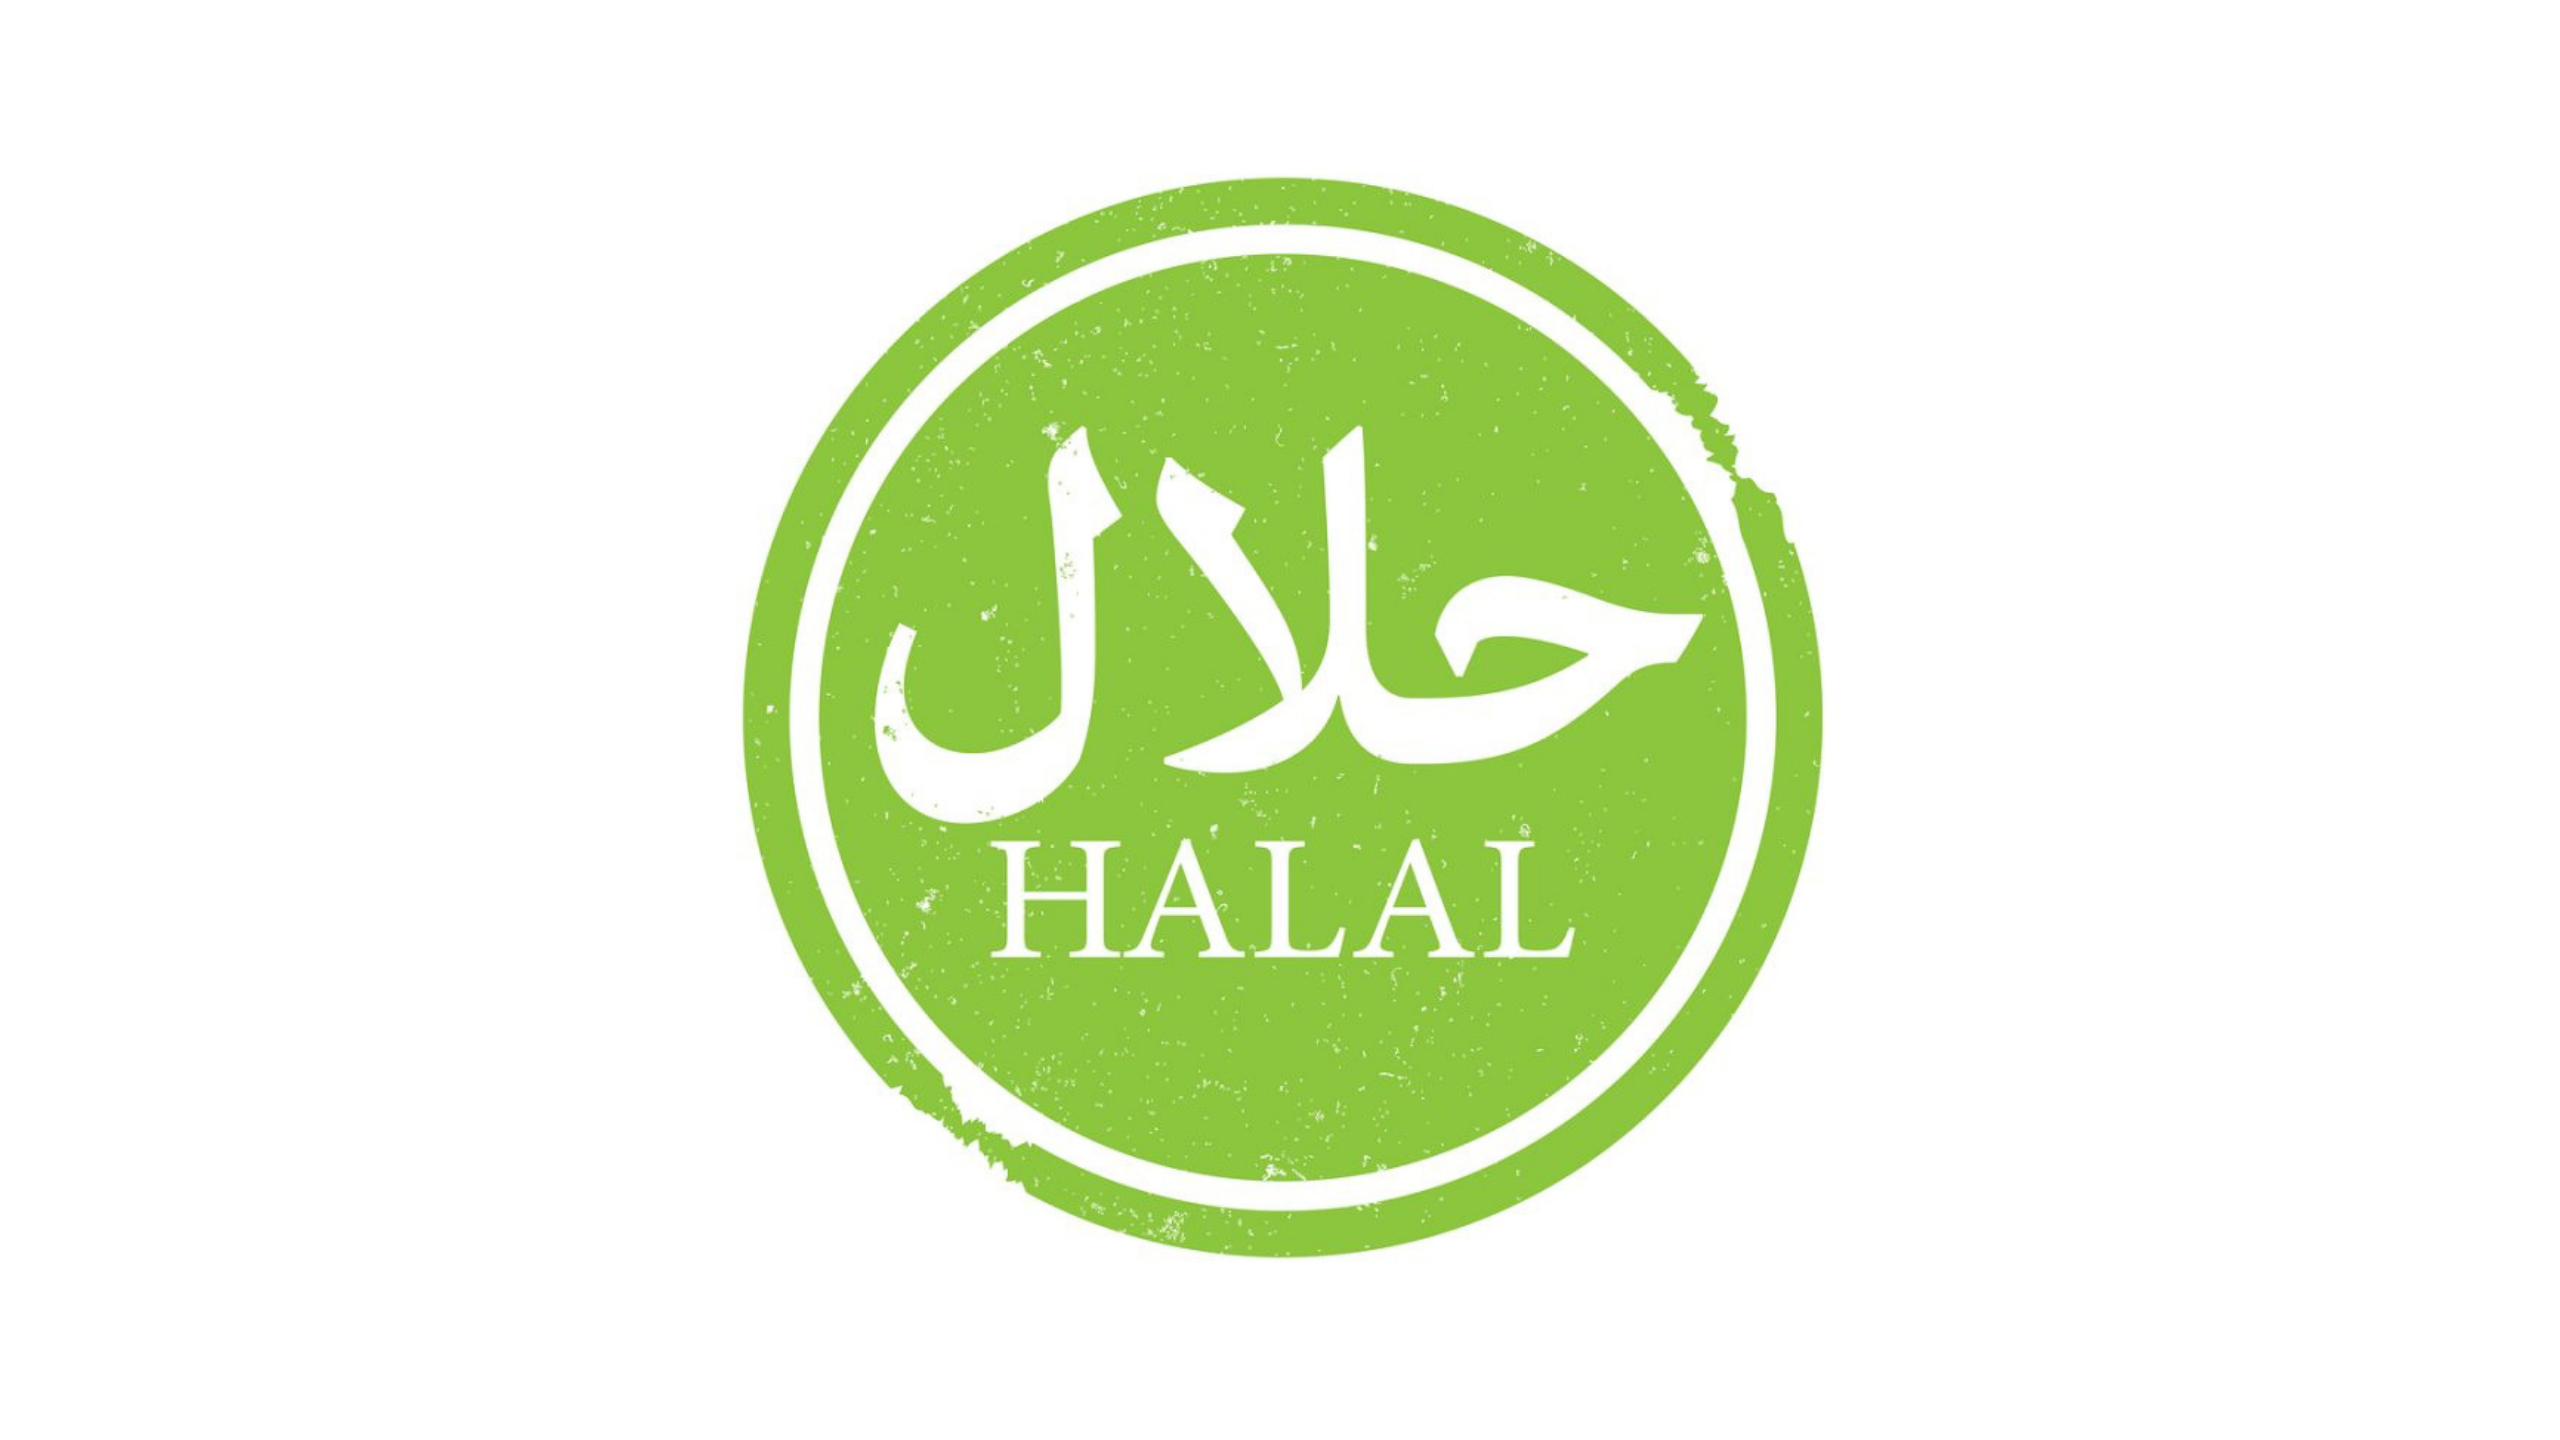 Халяль тольятти. Халяль. Halal логотип. Символ Халяль. Халяль баннер.